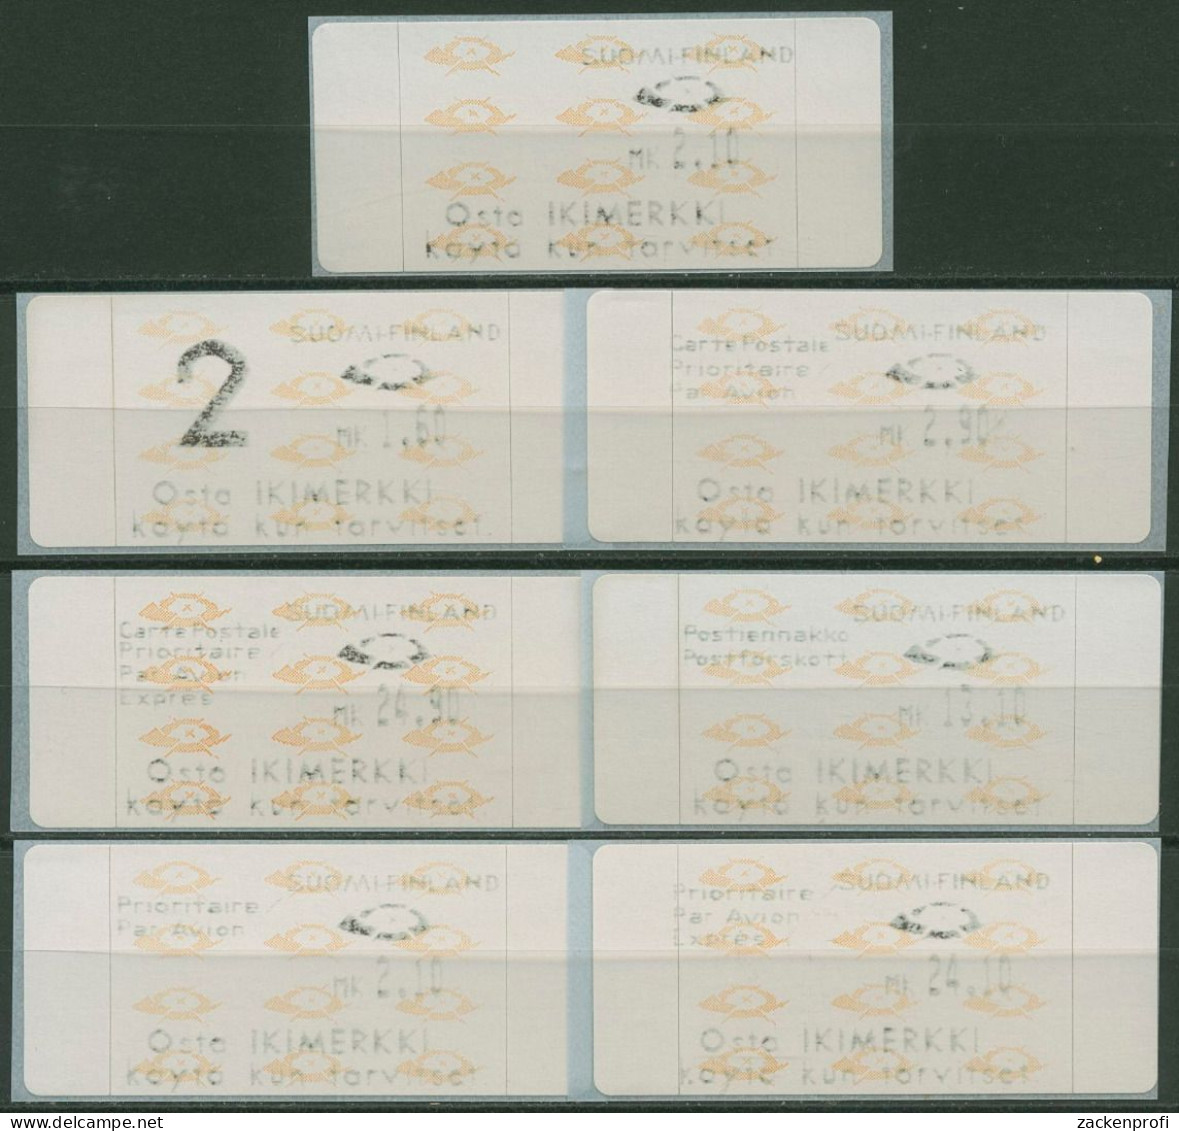 Finnland ATM 1992 Posthörner Zudrucksatz 7 Werte ATM 12.4 ZS 2 Postfrisch - Machine Labels [ATM]